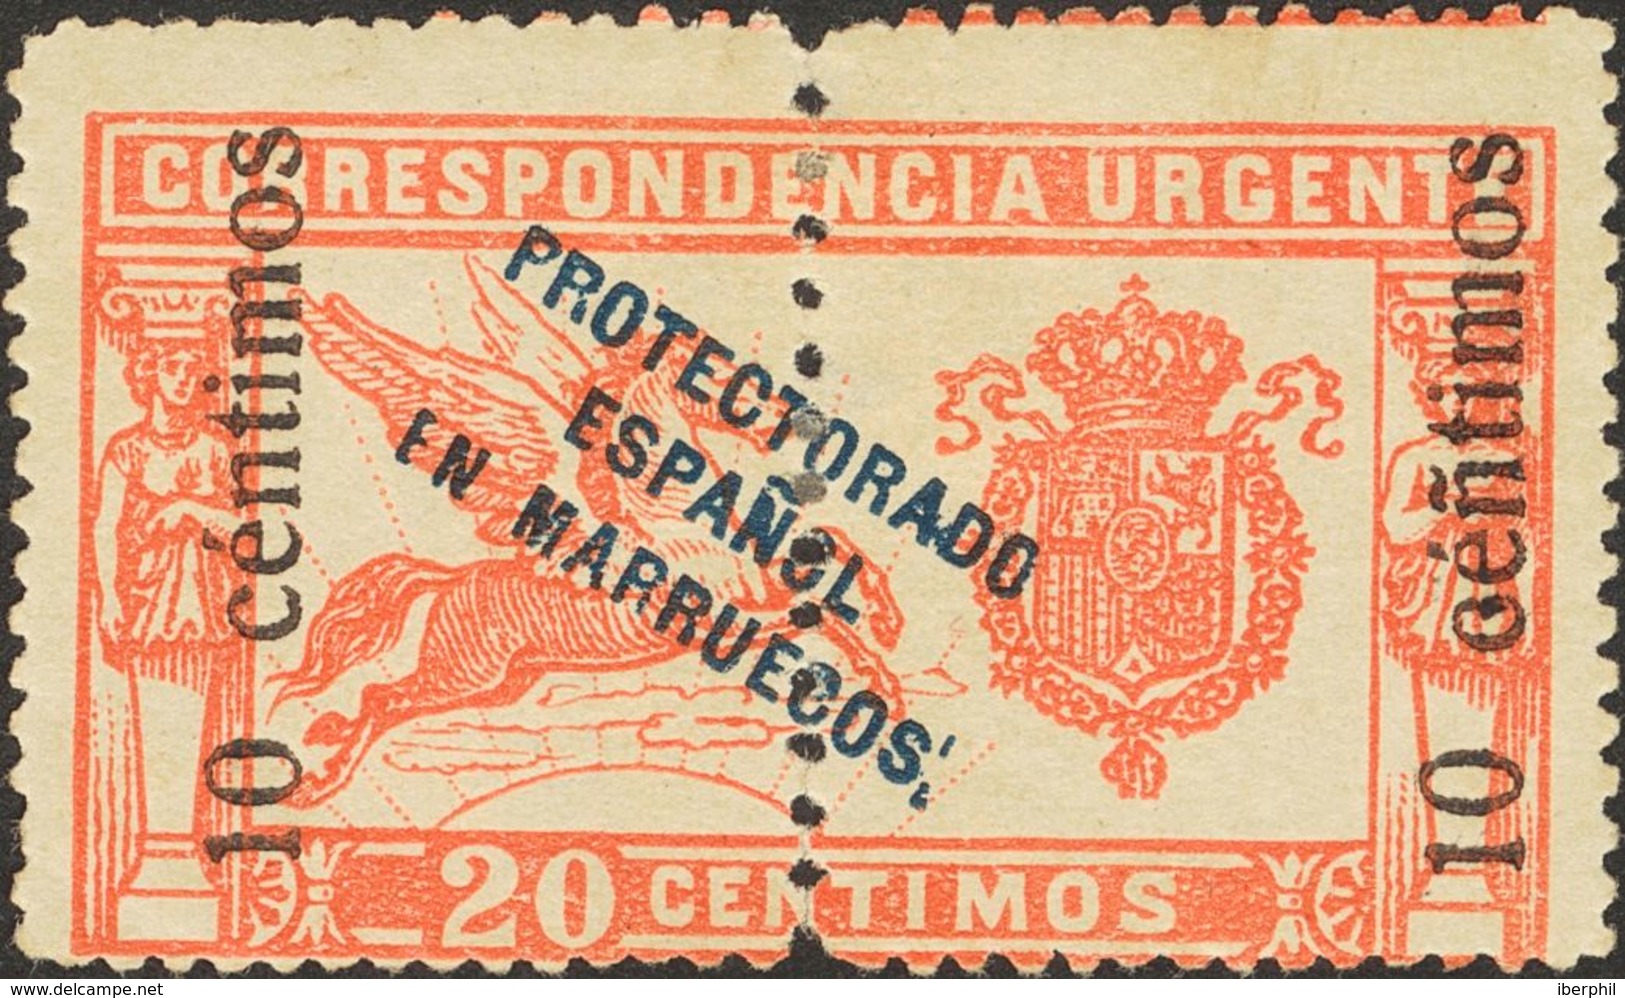 Marruecos. * 66hed 1920. 10 Cts Sobre 20 Cts Rojo. Variedad "Ñ" EN LUGAR DE "N" EN CENTIMOS. MAGNIFICO. 2013 255. - Marruecos Español